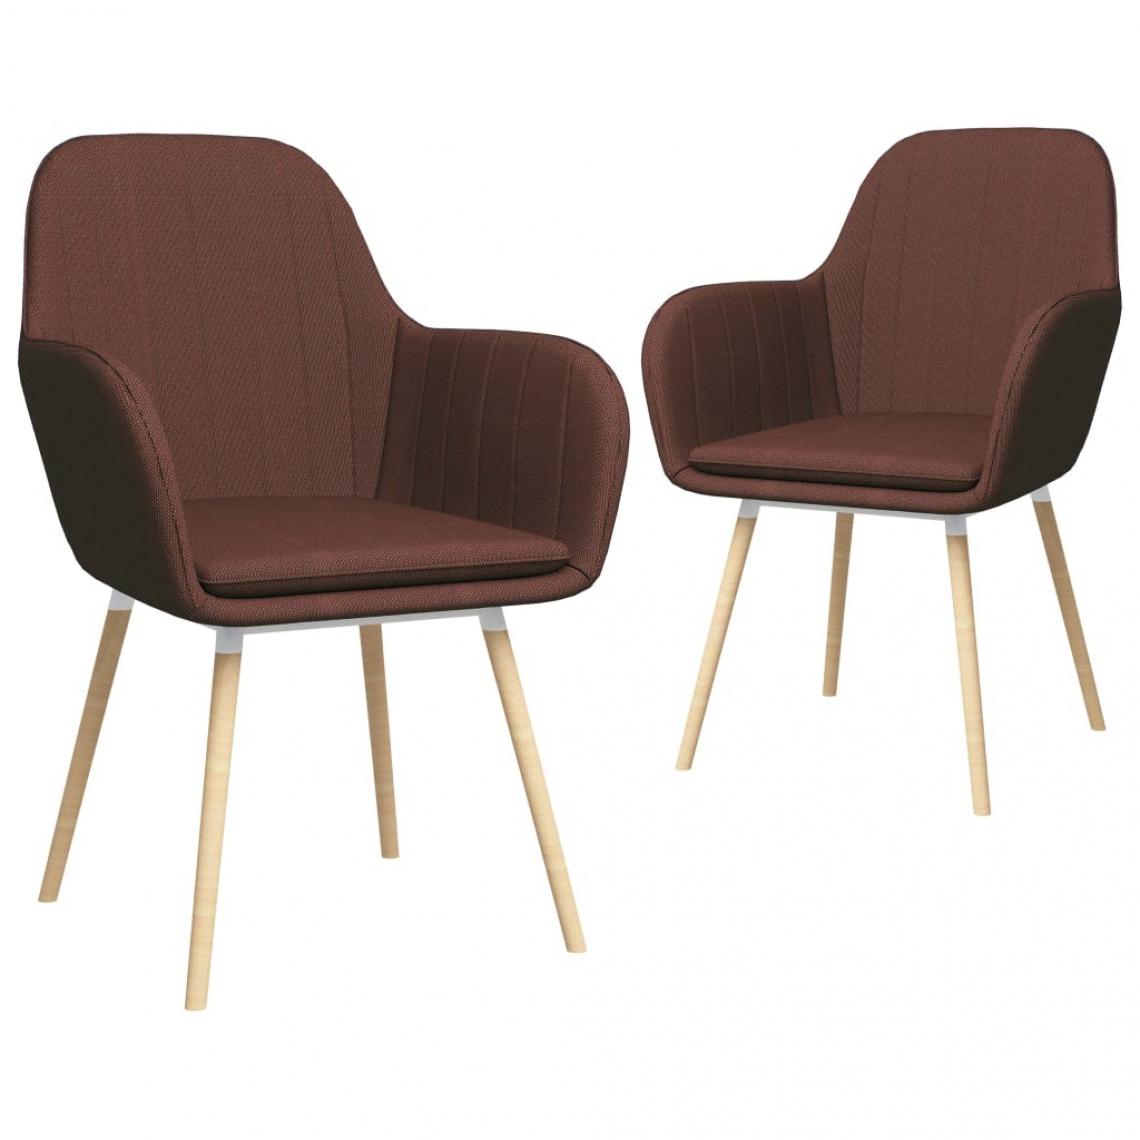 Decoshop26 - Lot de 2 chaises de salle à manger cuisine avec accoudoirs design élégant tissu marron CDS020141 - Chaises